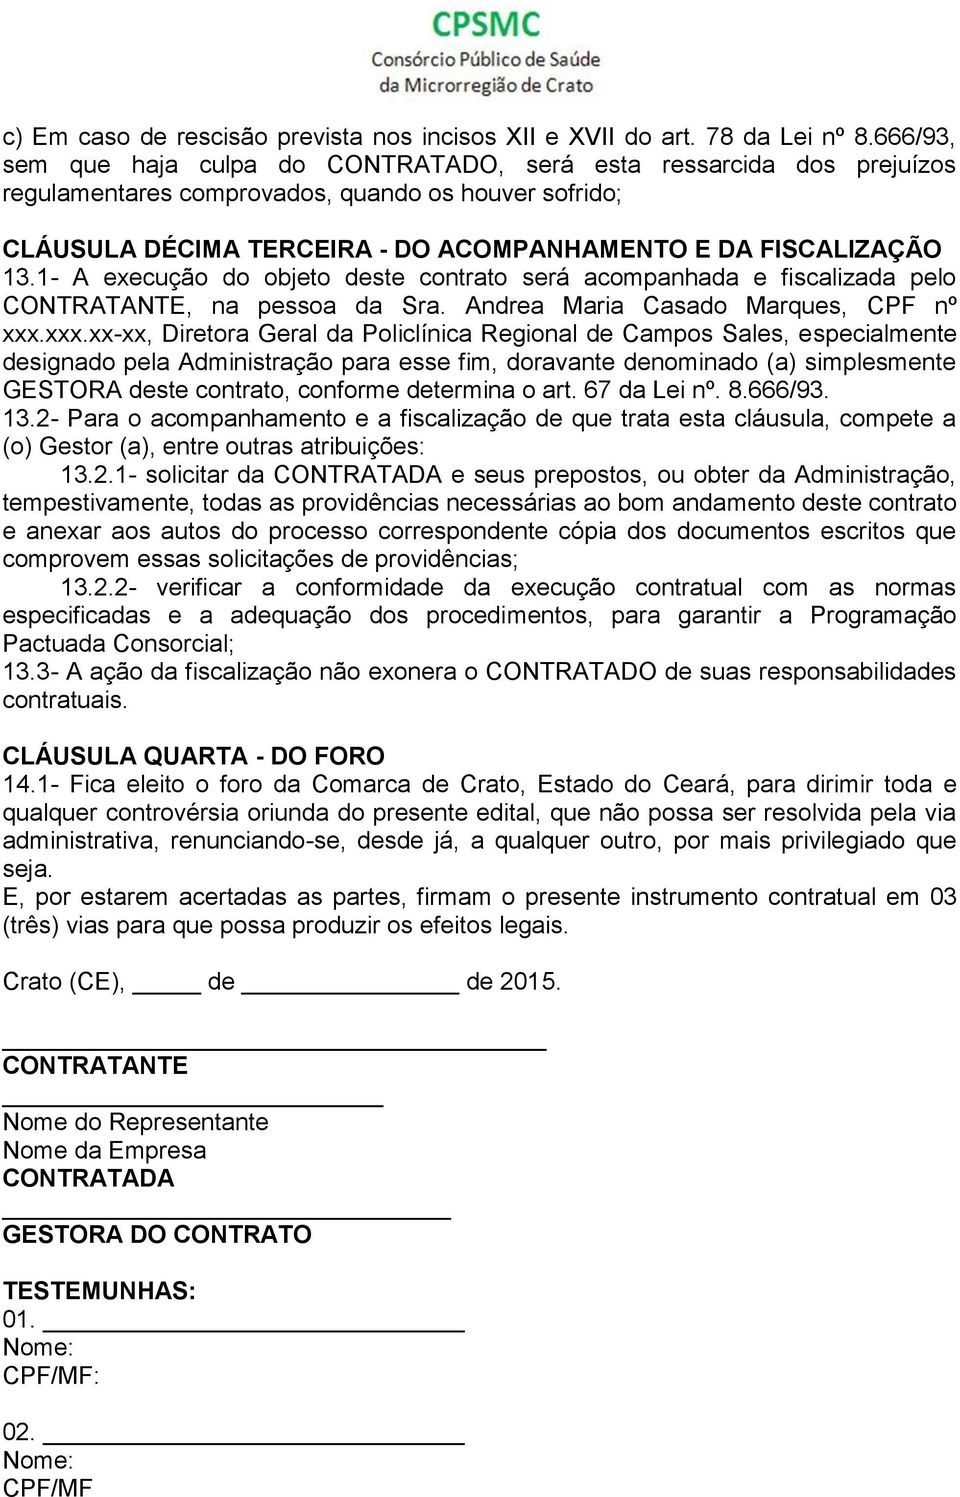 1- A execução do objeto deste contrato será acompanhada e fiscalizada pelo CONTRATANTE, na pessoa da Sra. Andrea Maria Casado Marques, CPF nº xxx.